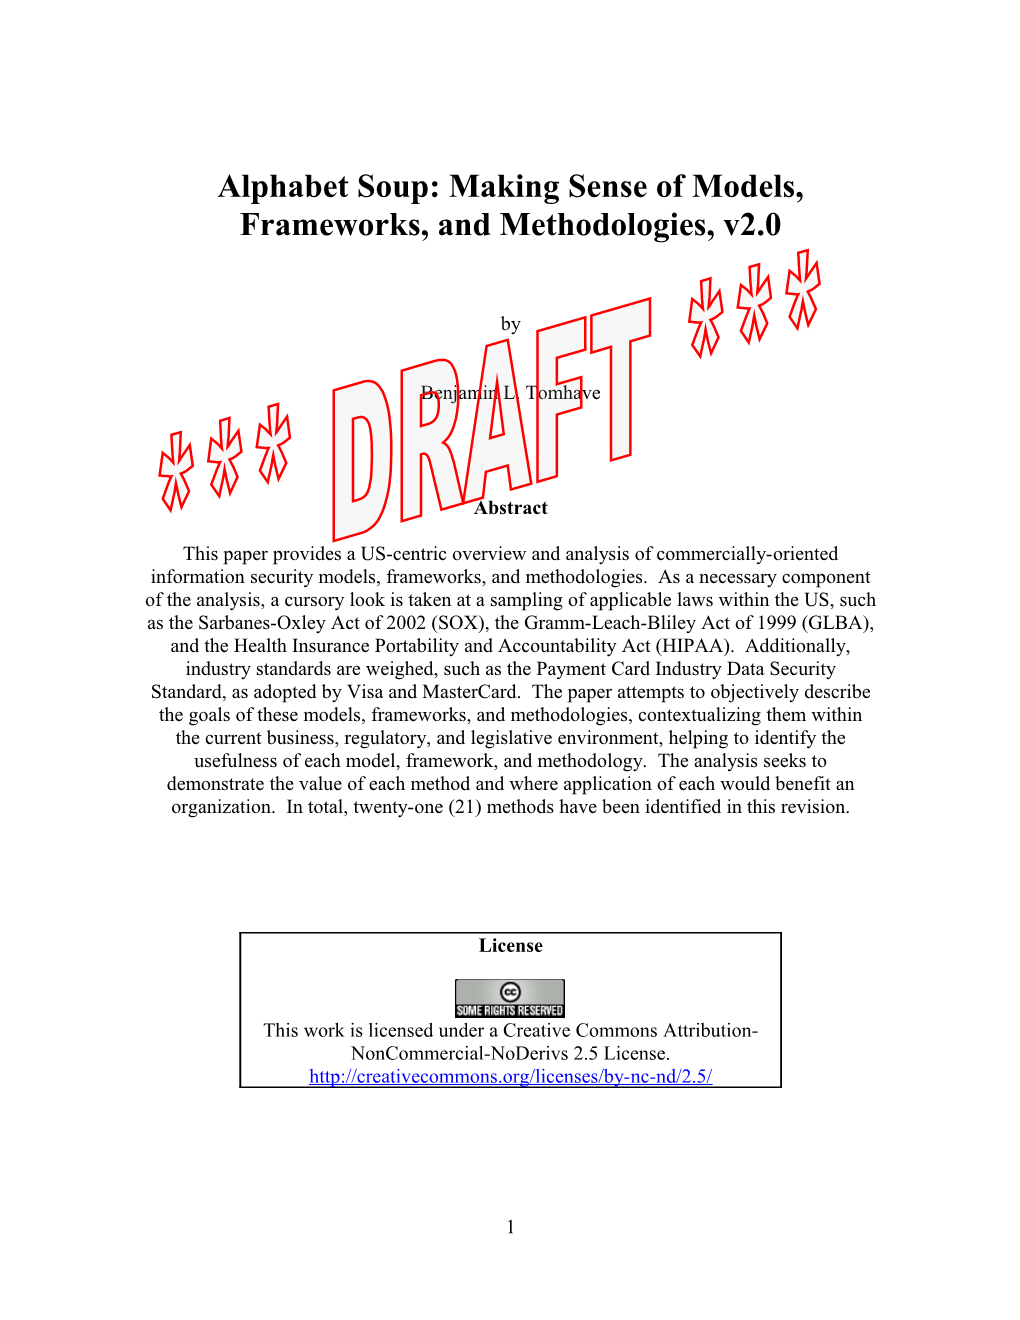 Alphabet Soup: Making Sense of Models, Frameworks, and Methodologies, V2.0